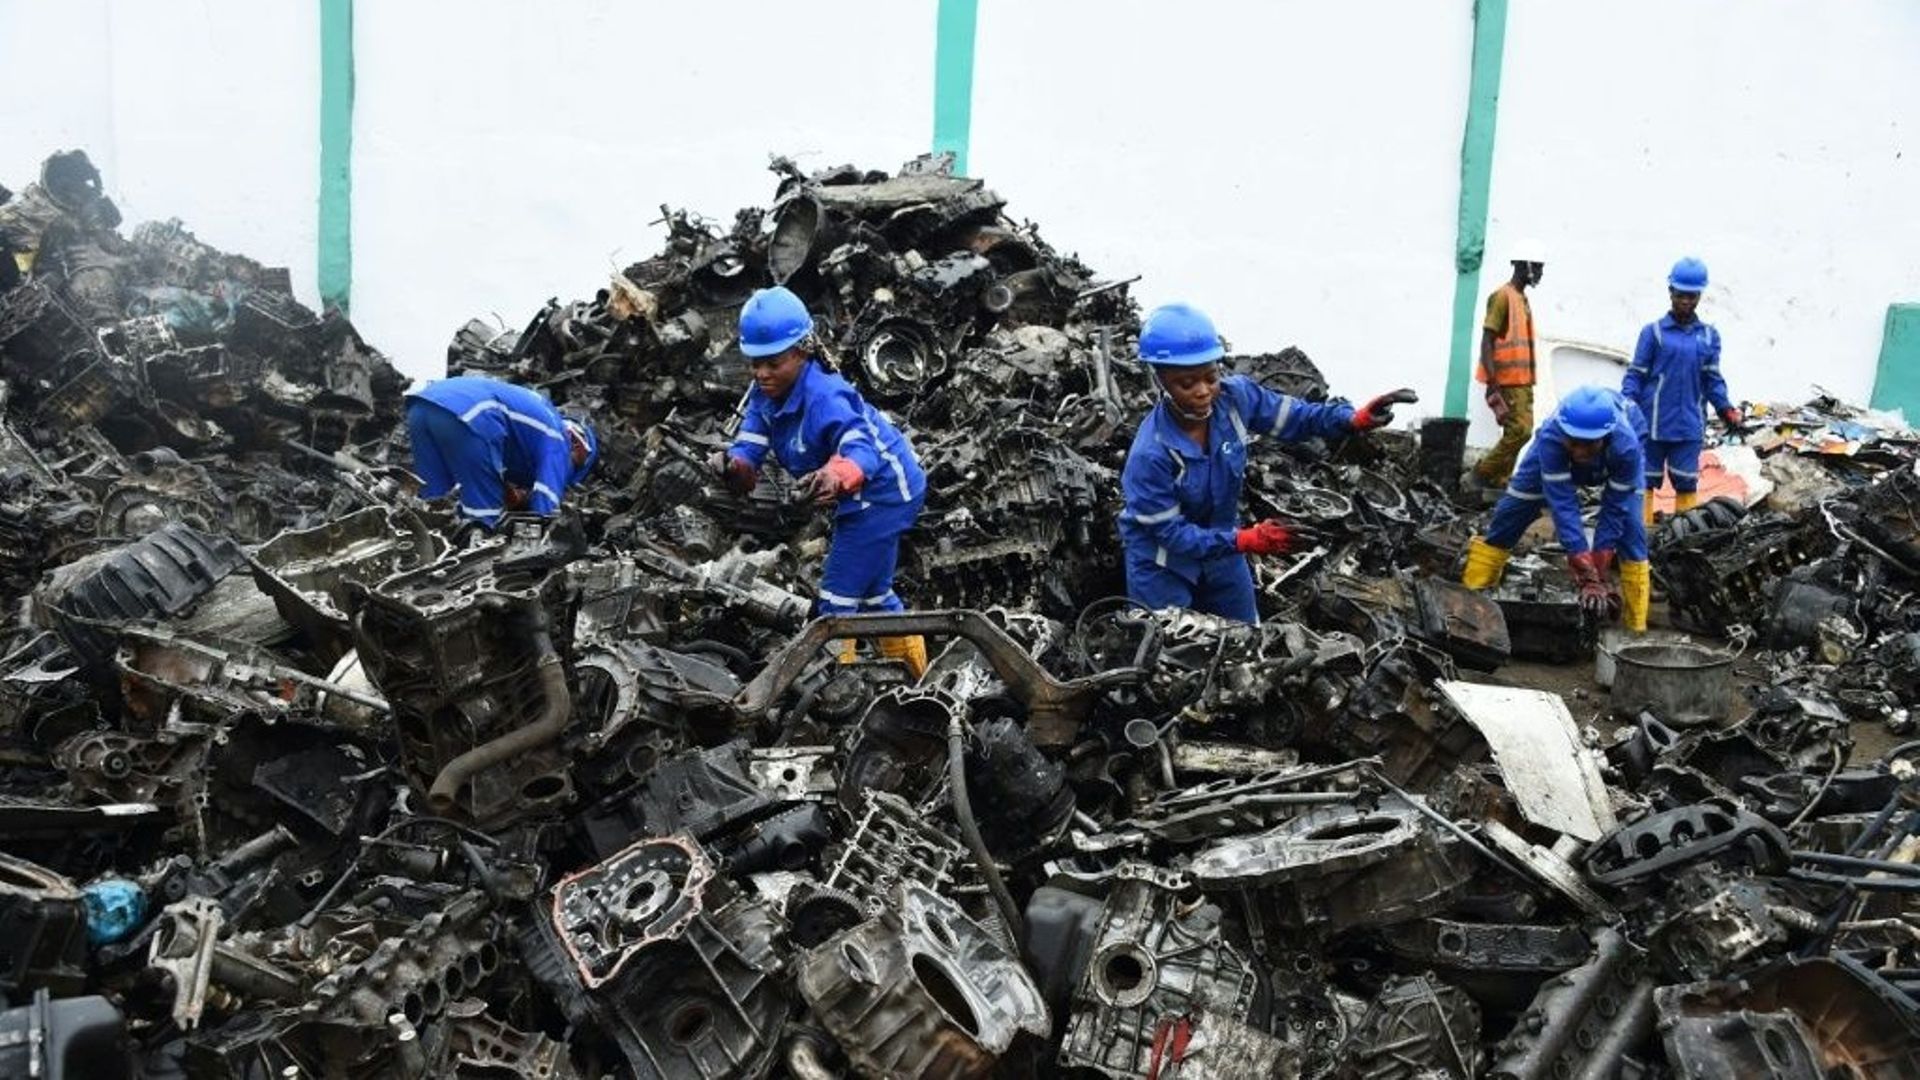 Le recyclage, une industrie prometteuse au Nigeria, jonché de décharges.